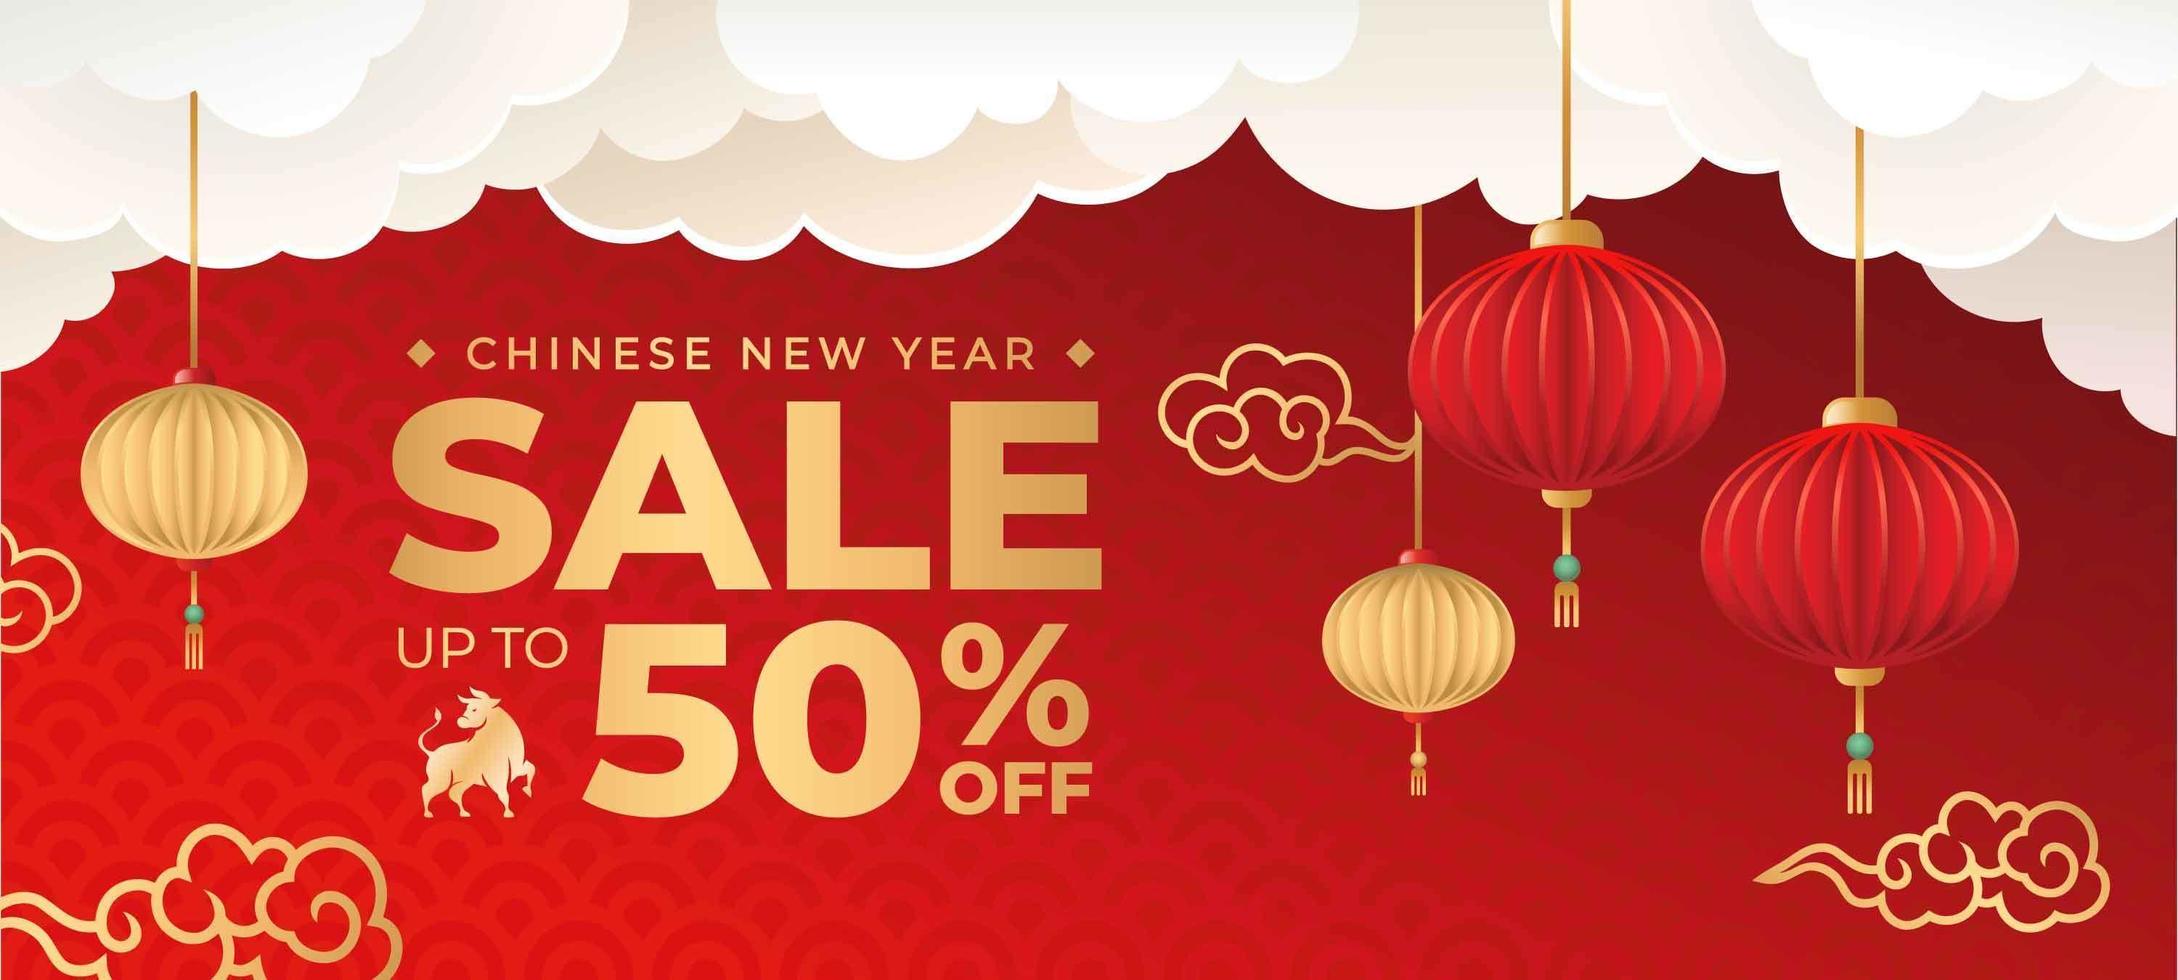 fira kinesisk nyårsförsäljningsbanner vektor